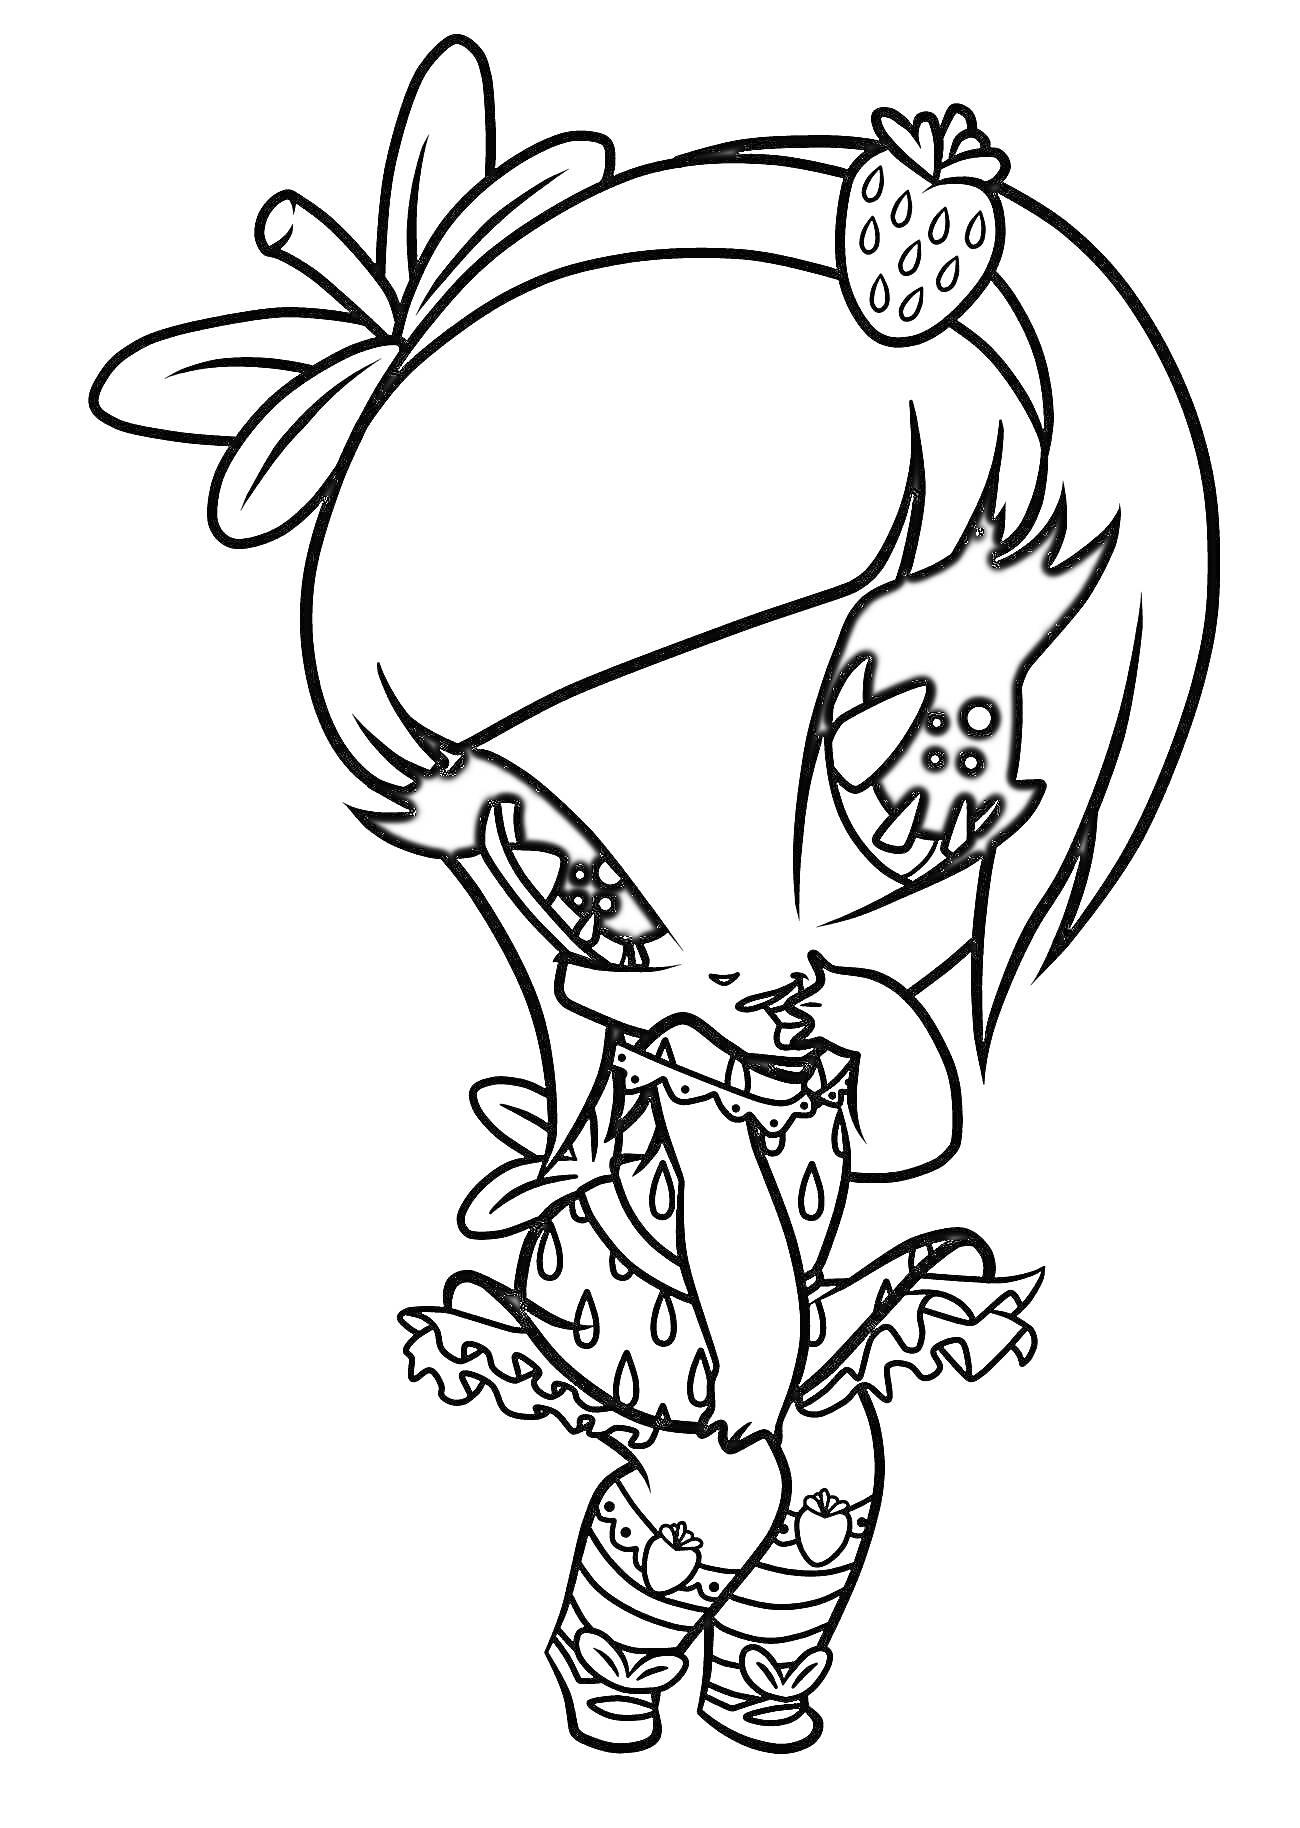 Раскраска Пикси Винкс с клубничкой на волосах и бантиком, в платье с клубничным принтом и туфлях